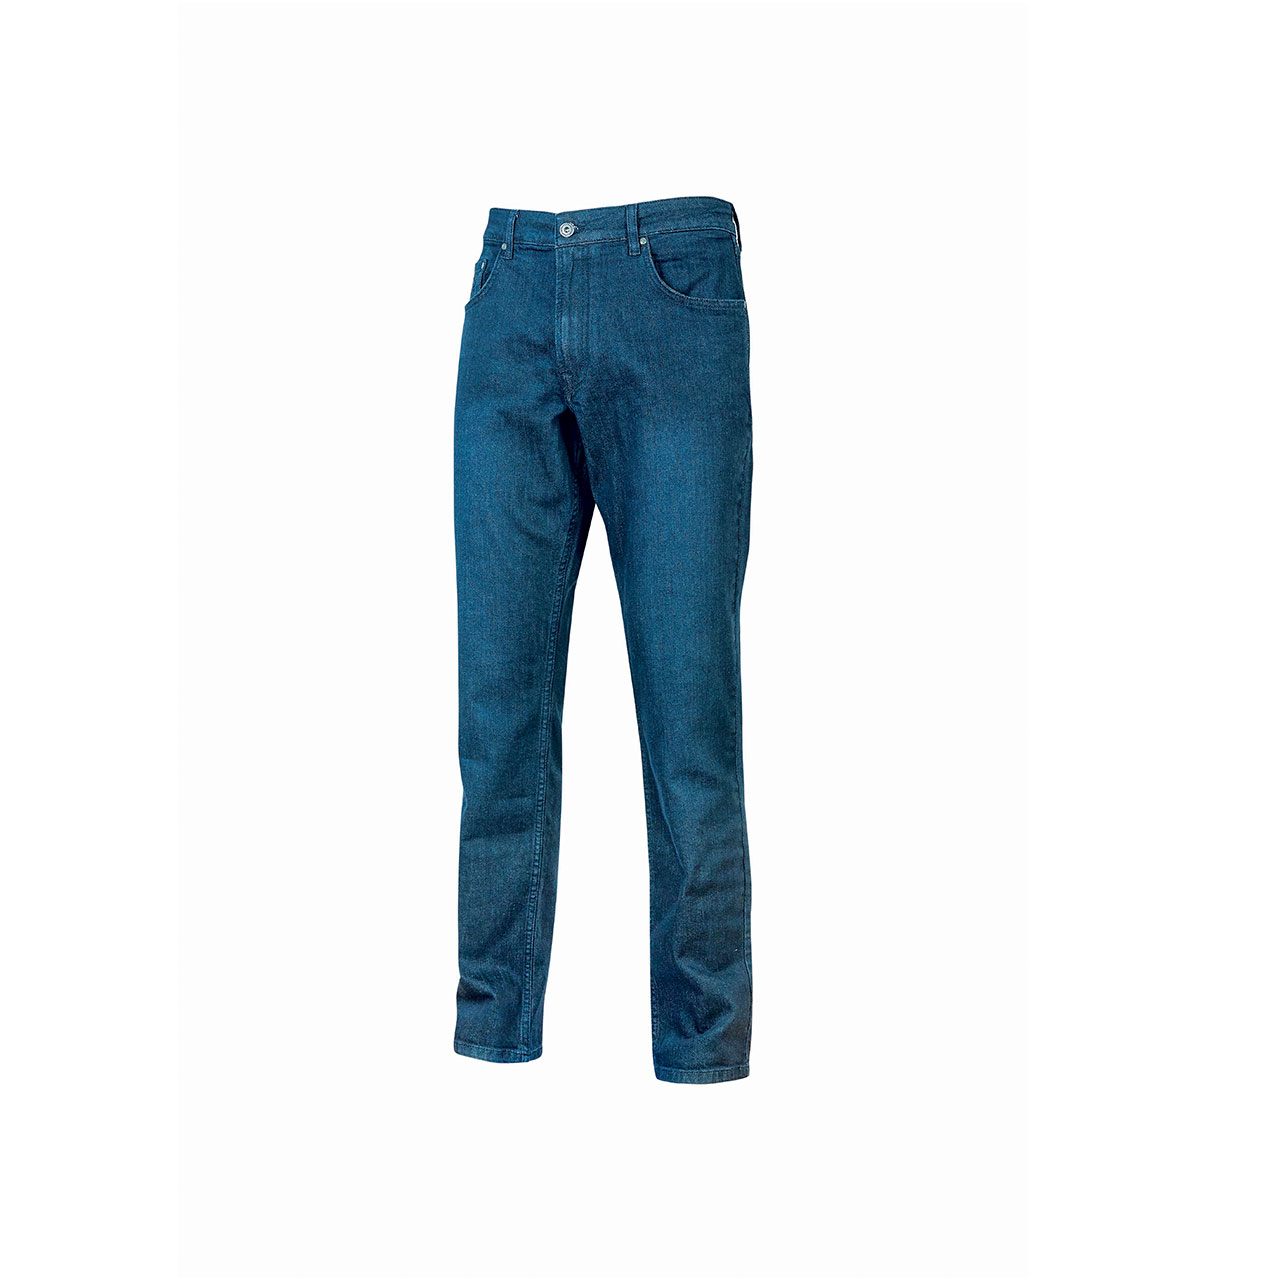 pantalone da lavoro upower modello romeo colore guado jeans